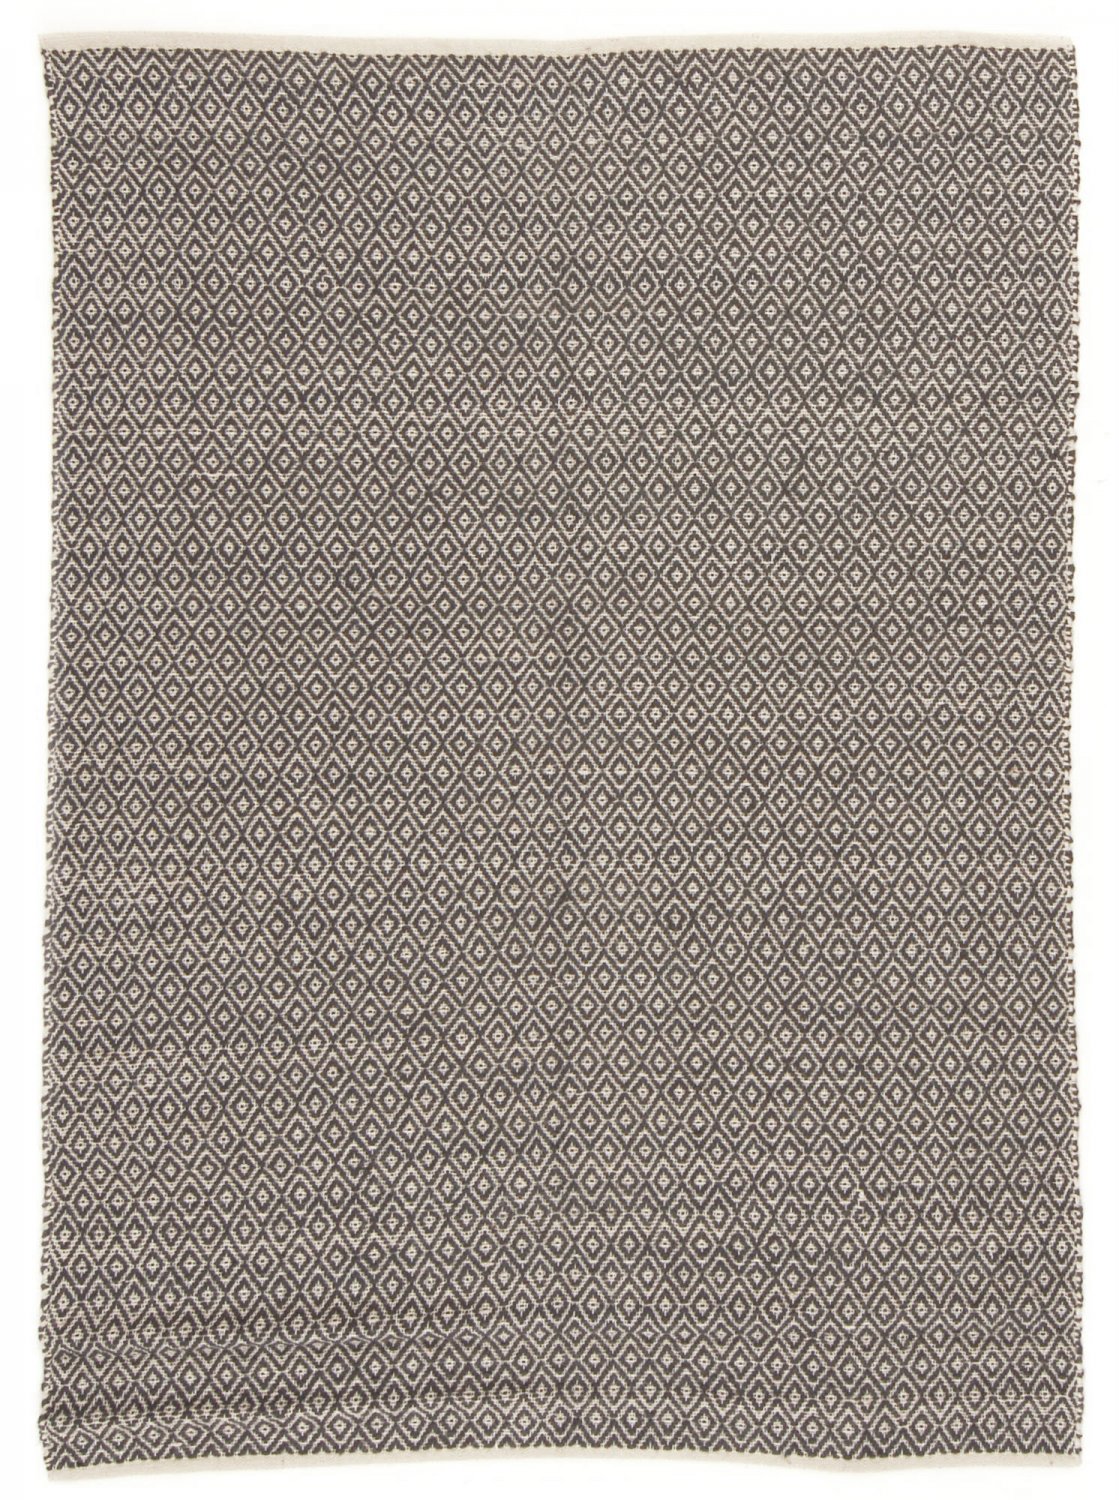 Jute rug - Puebla (black/grey)